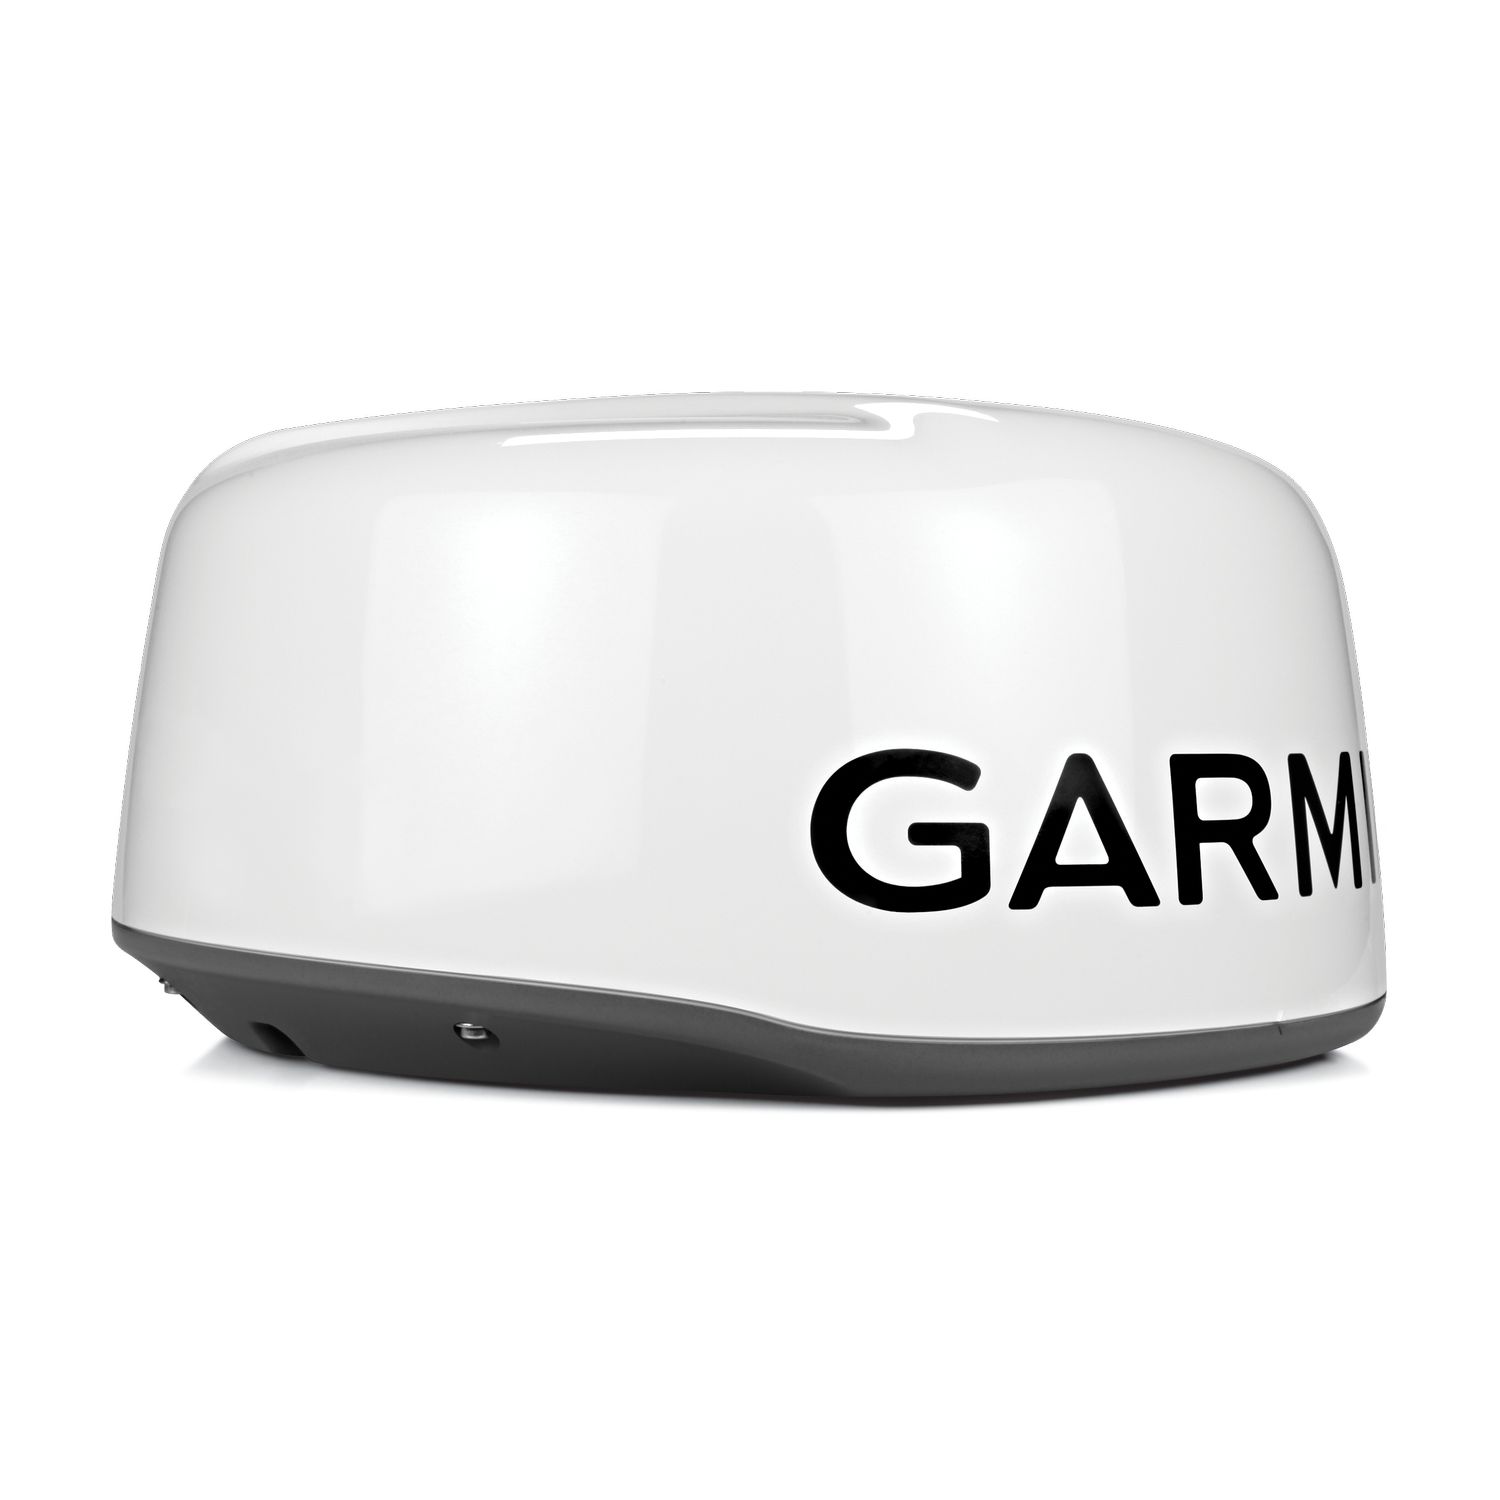 Garmin Radarantenne GMR 18HD+